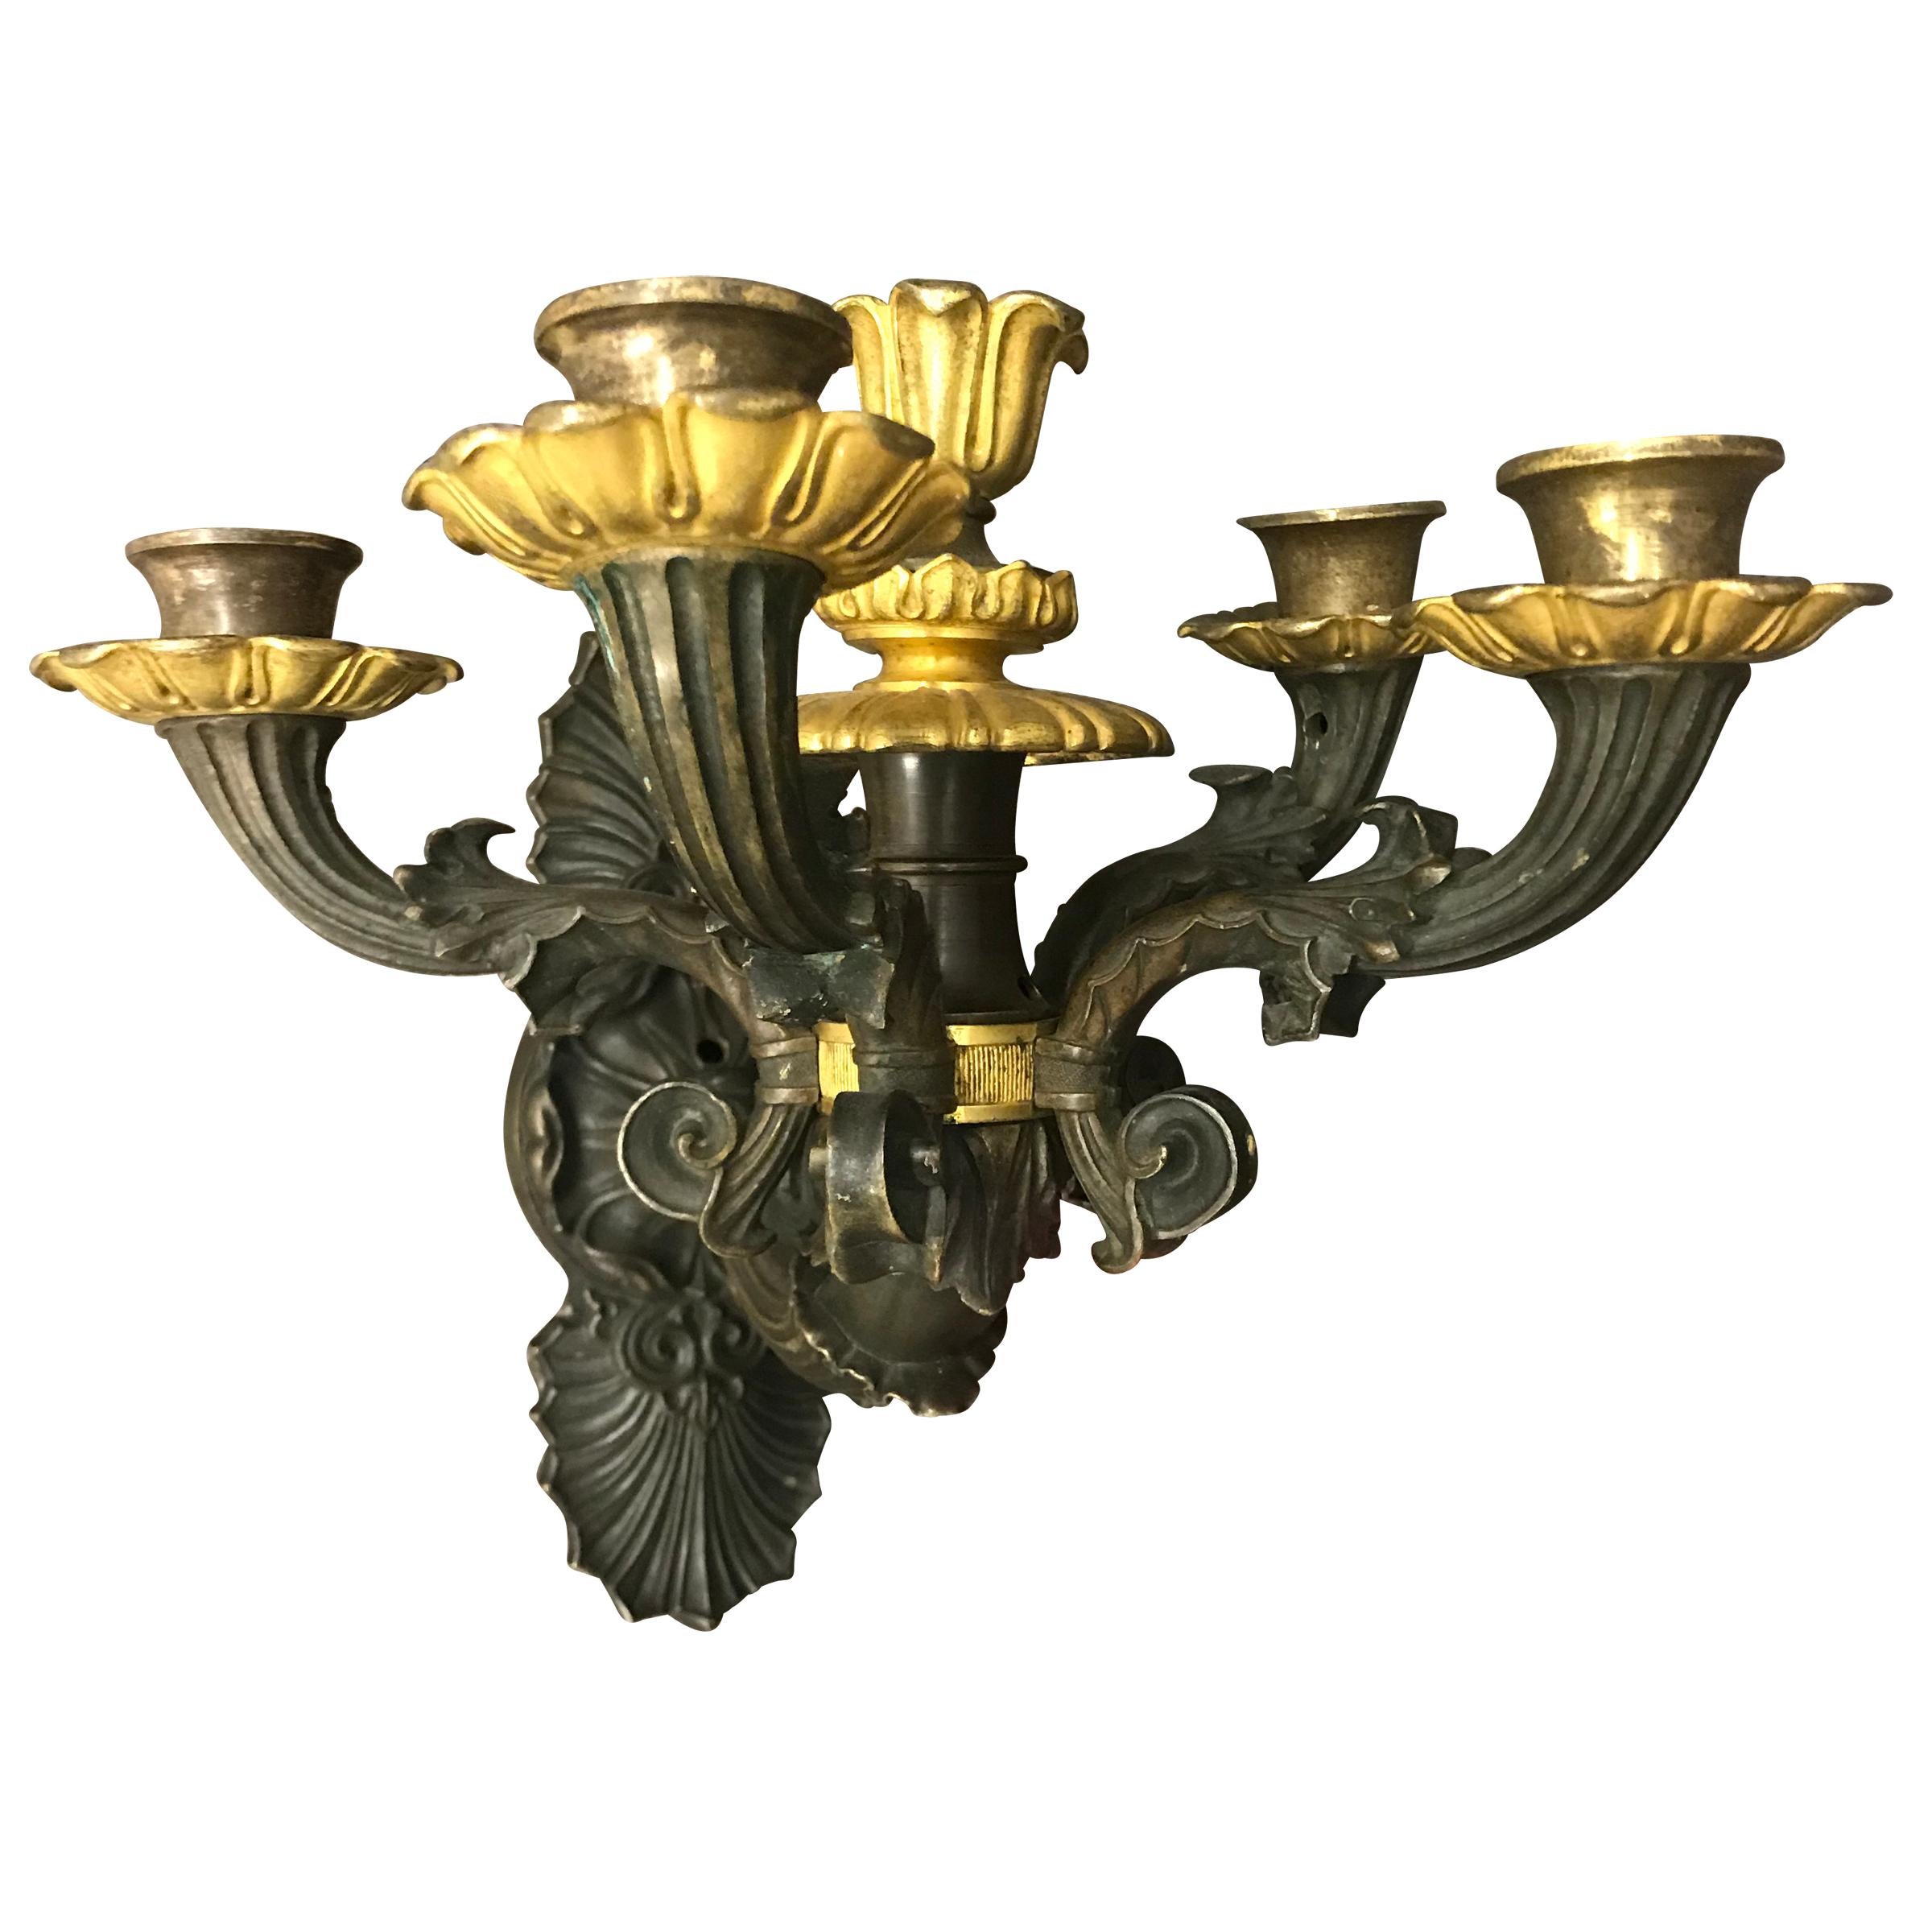 Französischer vierarmiger Wandleuchter aus Bronzeguss von Charles X. aus dem frühen 19. Jahrhundert mit vergoldeten Bronzeschalen und floralen Bechern. In der Mitte befindet sich ein zusätzlicher Kerzenbecher mit vergoldeten Bronzedetails. Die